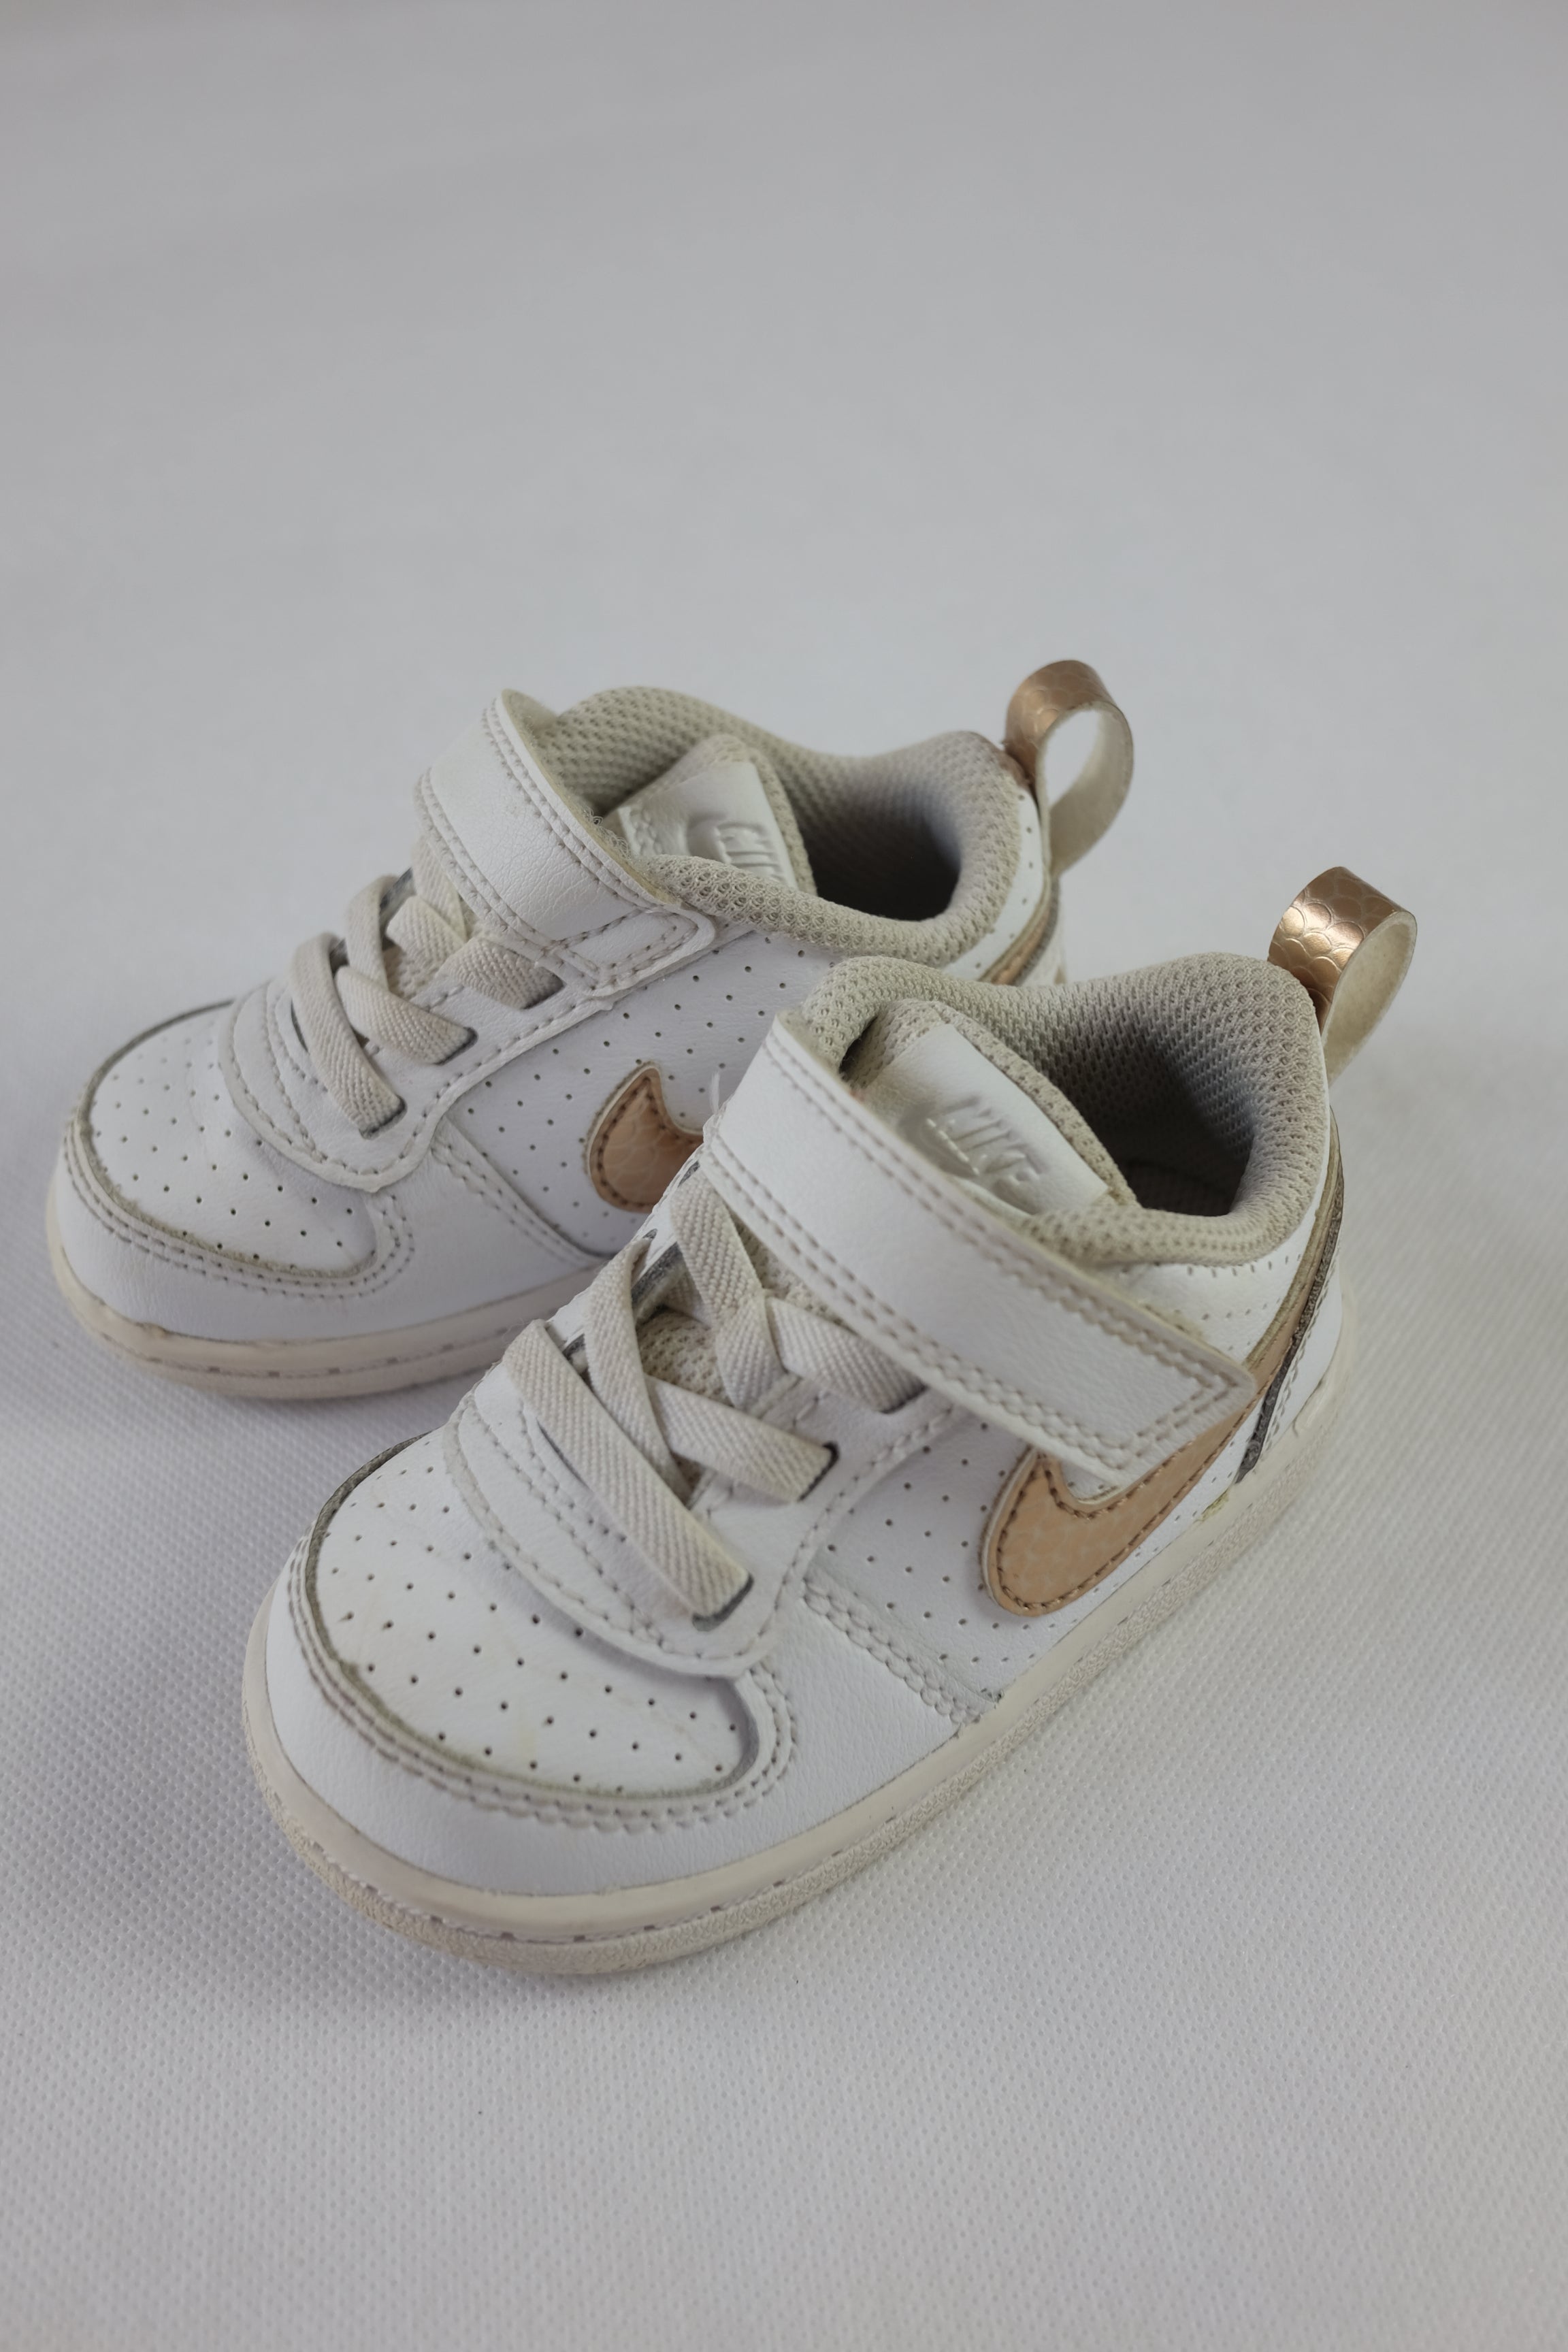 Sneakers från Nike i barnstorlek. Vita, med Nike-logotypen i guld. 